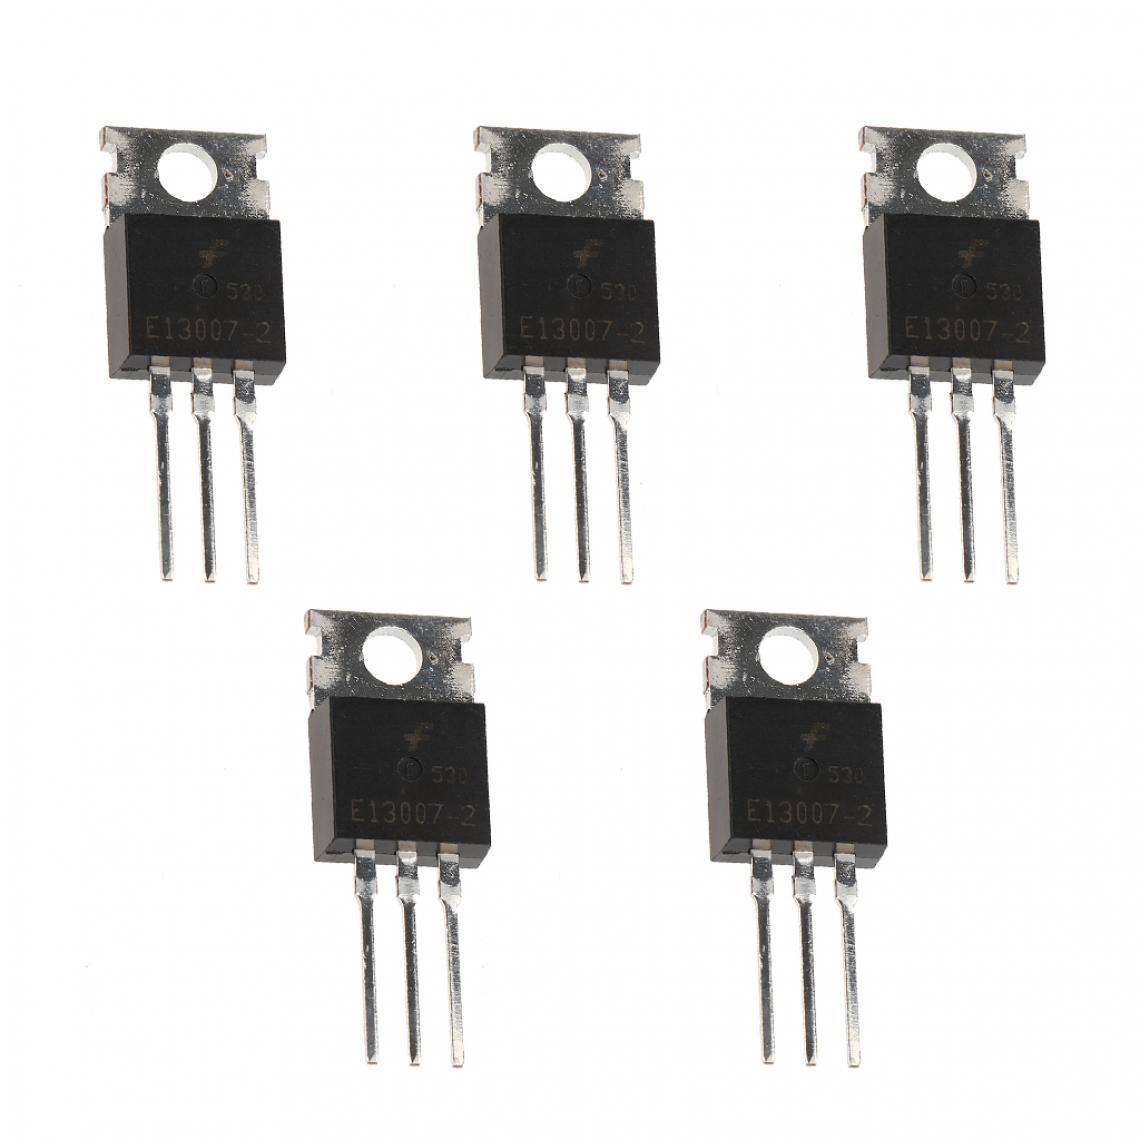 marque generique - 5 Pcs 13007 Transistor De Puissance NPN 13007g Pour Commutation D'alimentation - Appareils de mesure